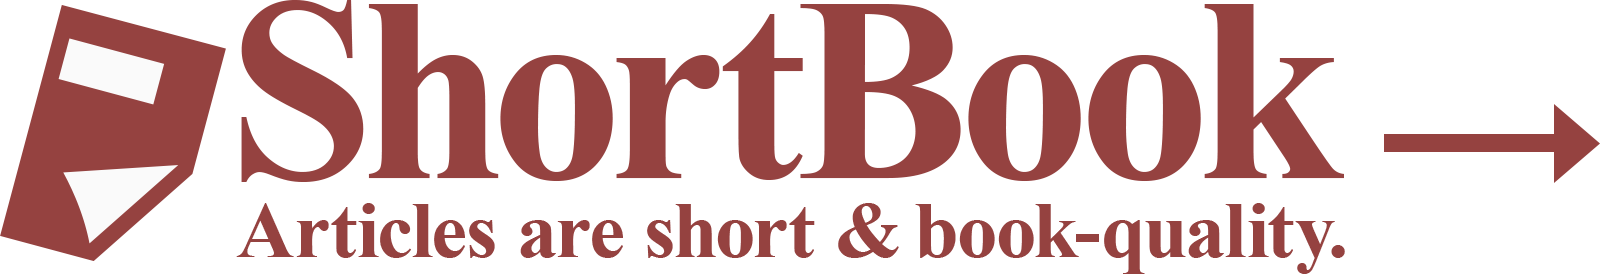 ShortBook logotype.